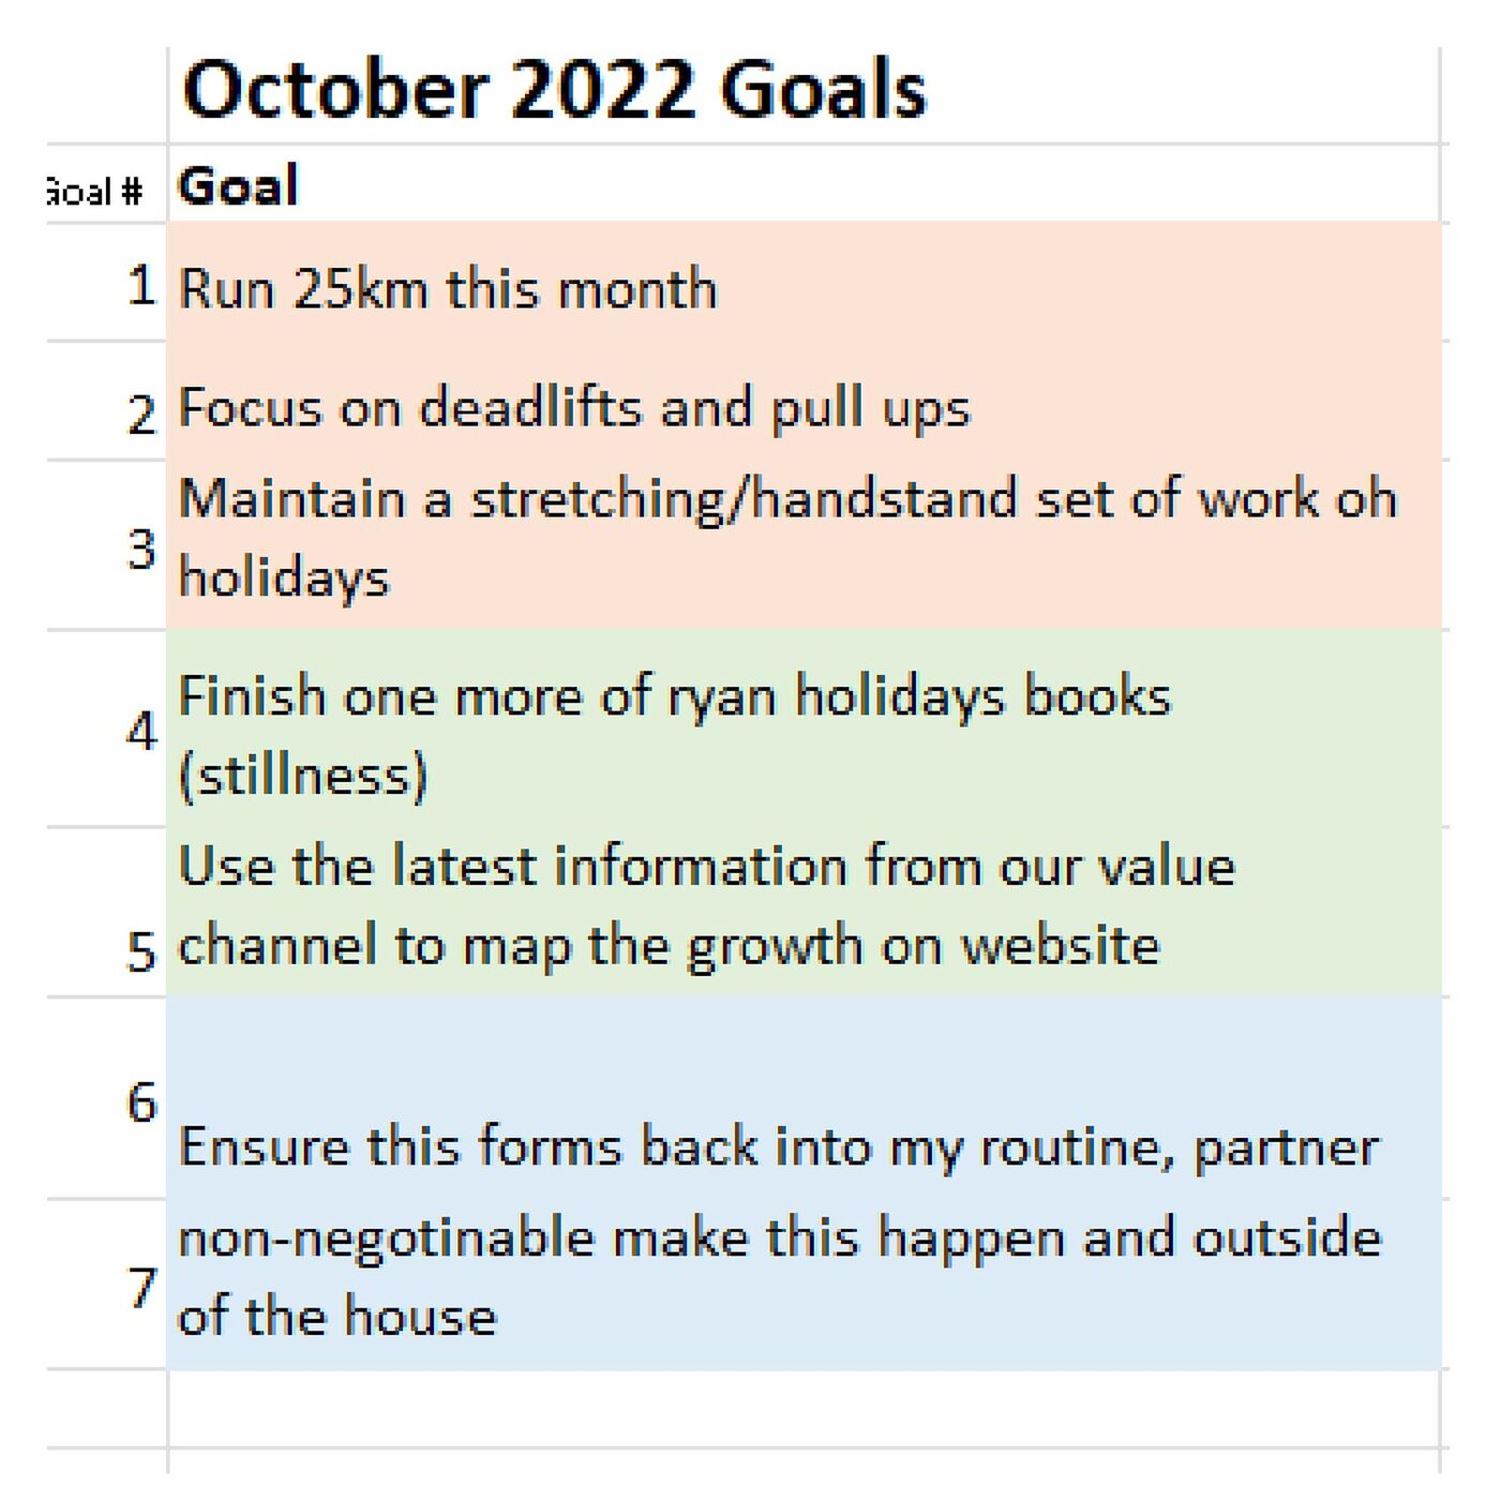 Juan's October Goals